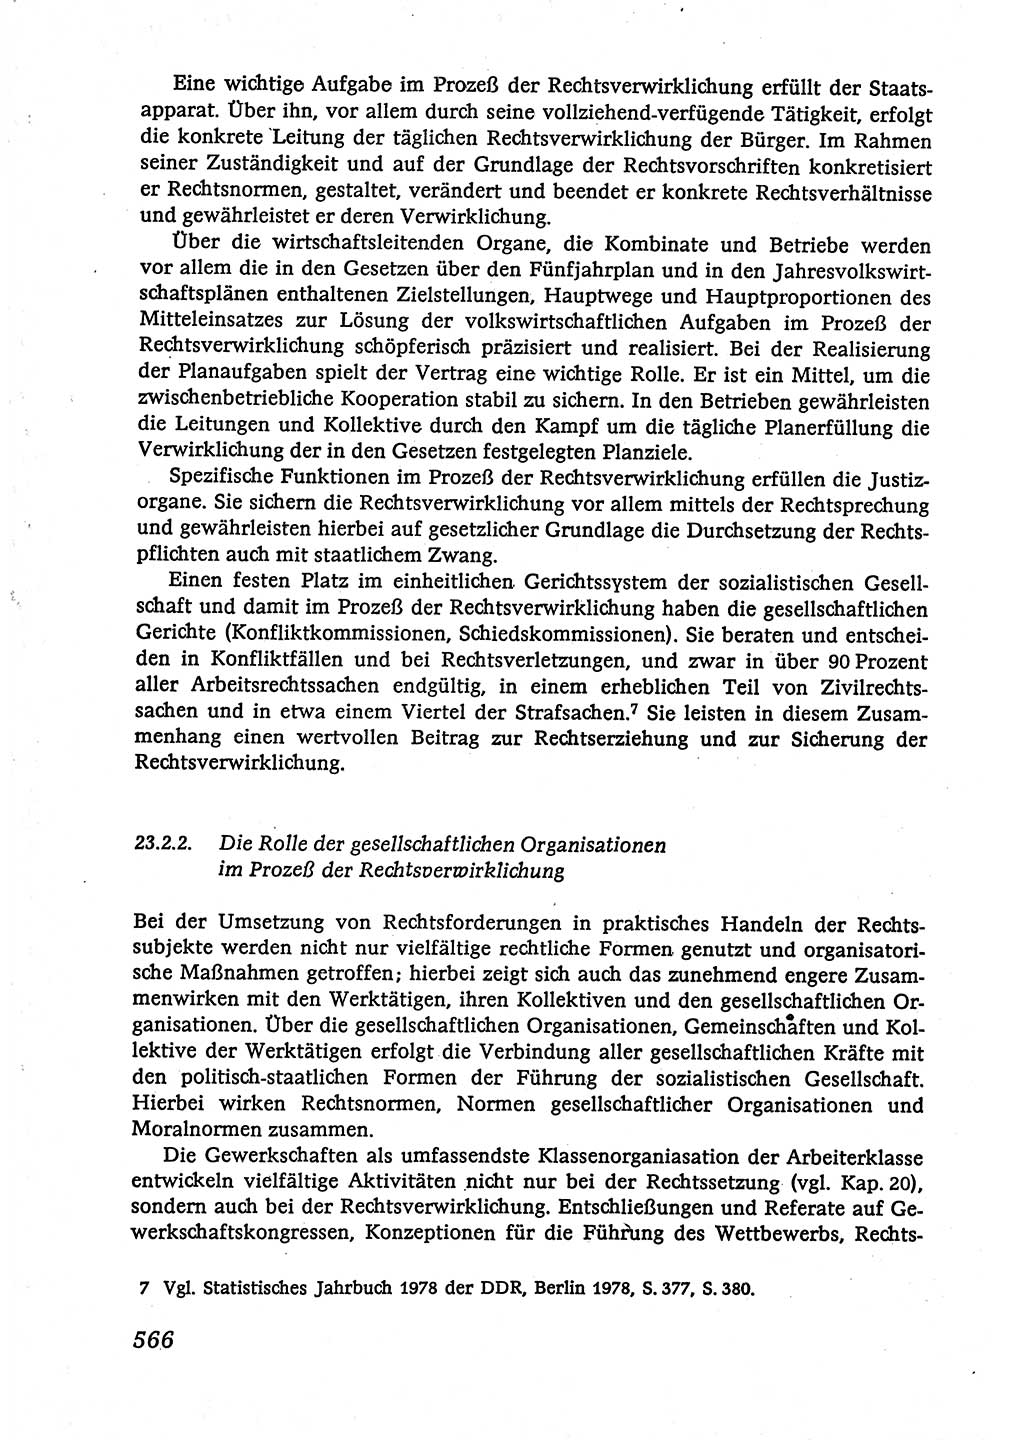 Marxistisch-leninistische (ML) Staats- und Rechtstheorie [Deutsche Demokratische Republik (DDR)], Lehrbuch 1980, Seite 566 (ML St.-R.-Th. DDR Lb. 1980, S. 566)